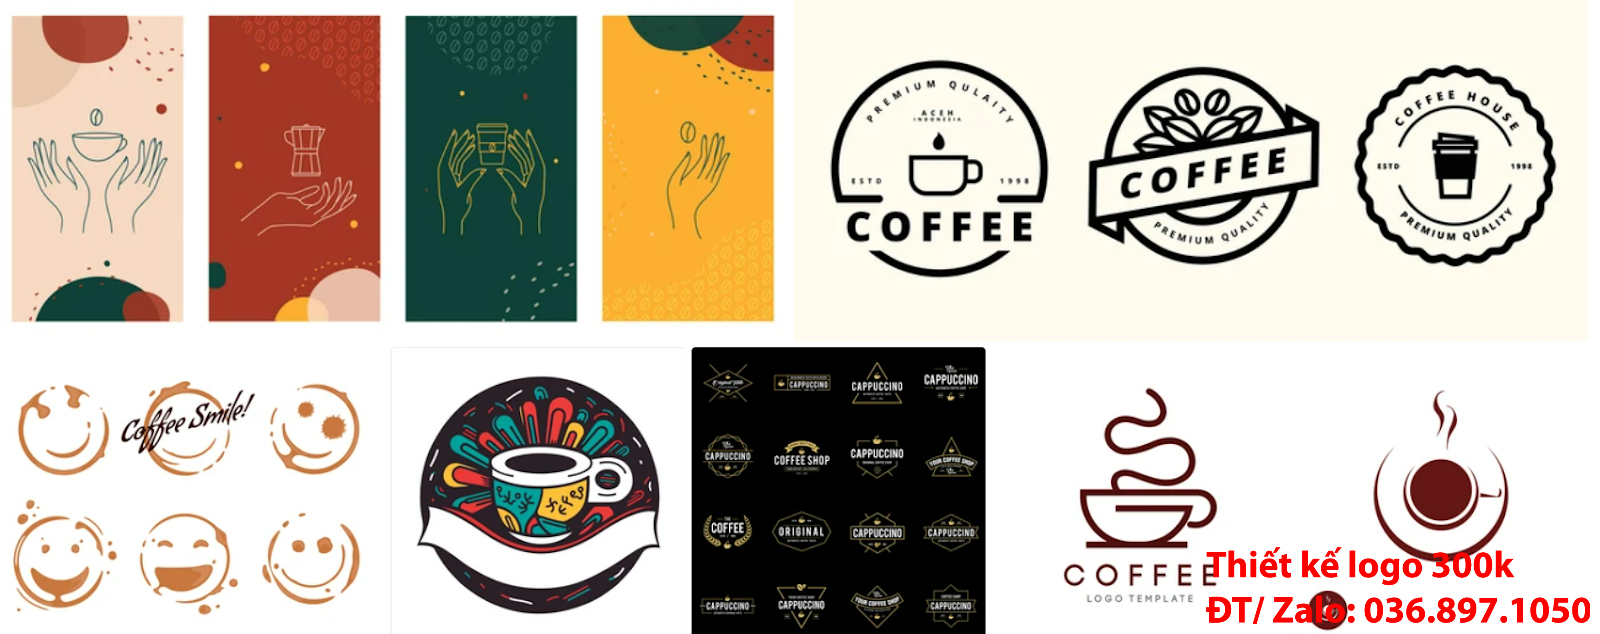 Đơn vị cung cấp mẫu thiết kế logo cà phê cafe coffee đẹp giá rẻ chuyên nghiệp tại Sài Gòn